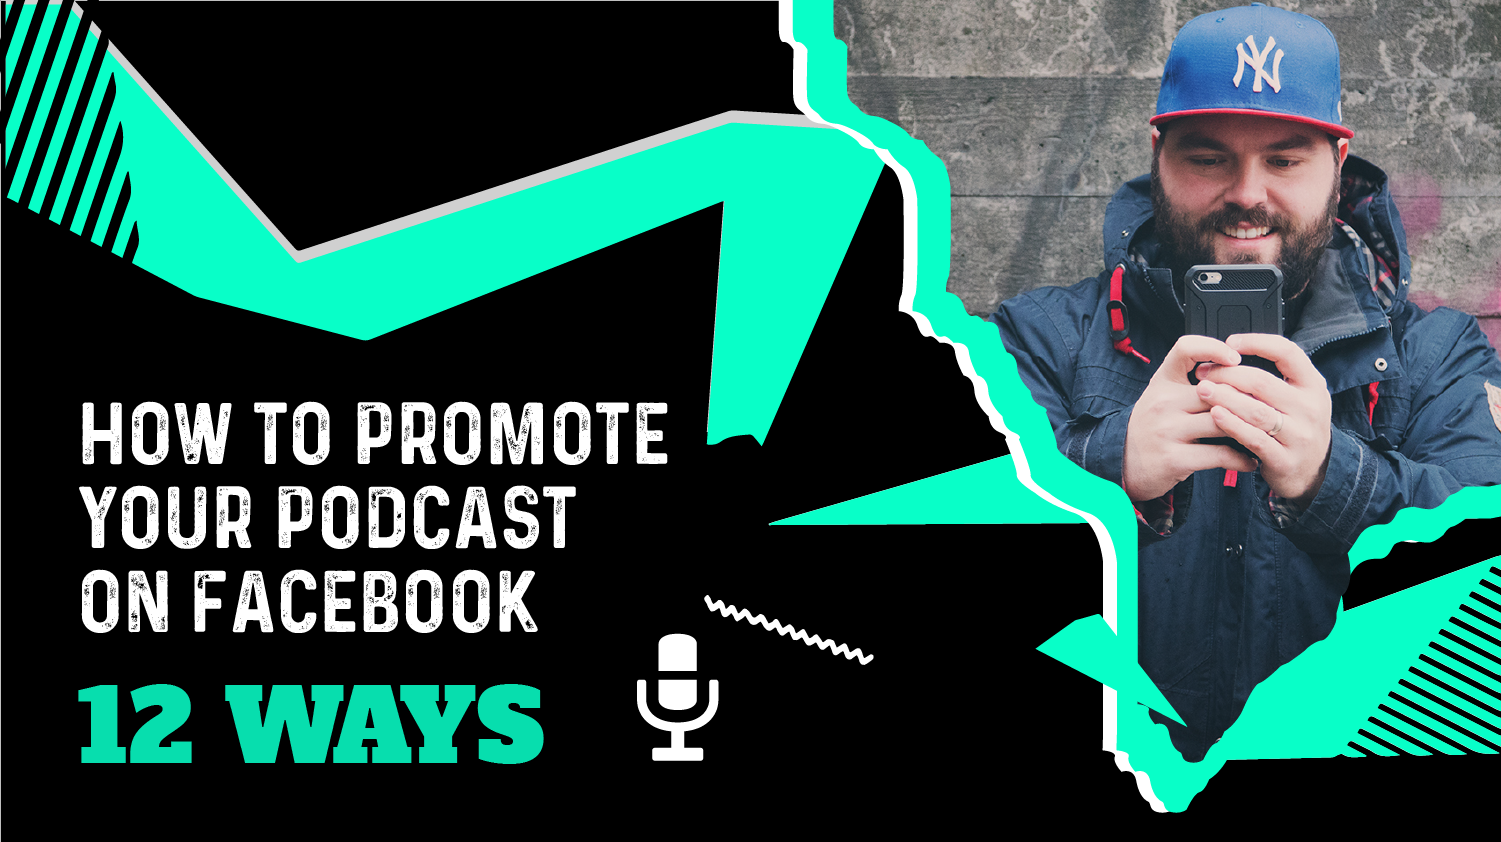 Quảng bá podcast trên Facebook: Bạn đang muốn quảng bá podcast của mình trên mạng xã hội? Facebook là một nơi tuyệt vời để khám phá và phát triển mạng lưới người nghe của bạn. Hãy xem hình ảnh để biết thêm cách tạo nội dung hấp dẫn và quảng bá hiệu quả podcast của mình trên Facebook. 